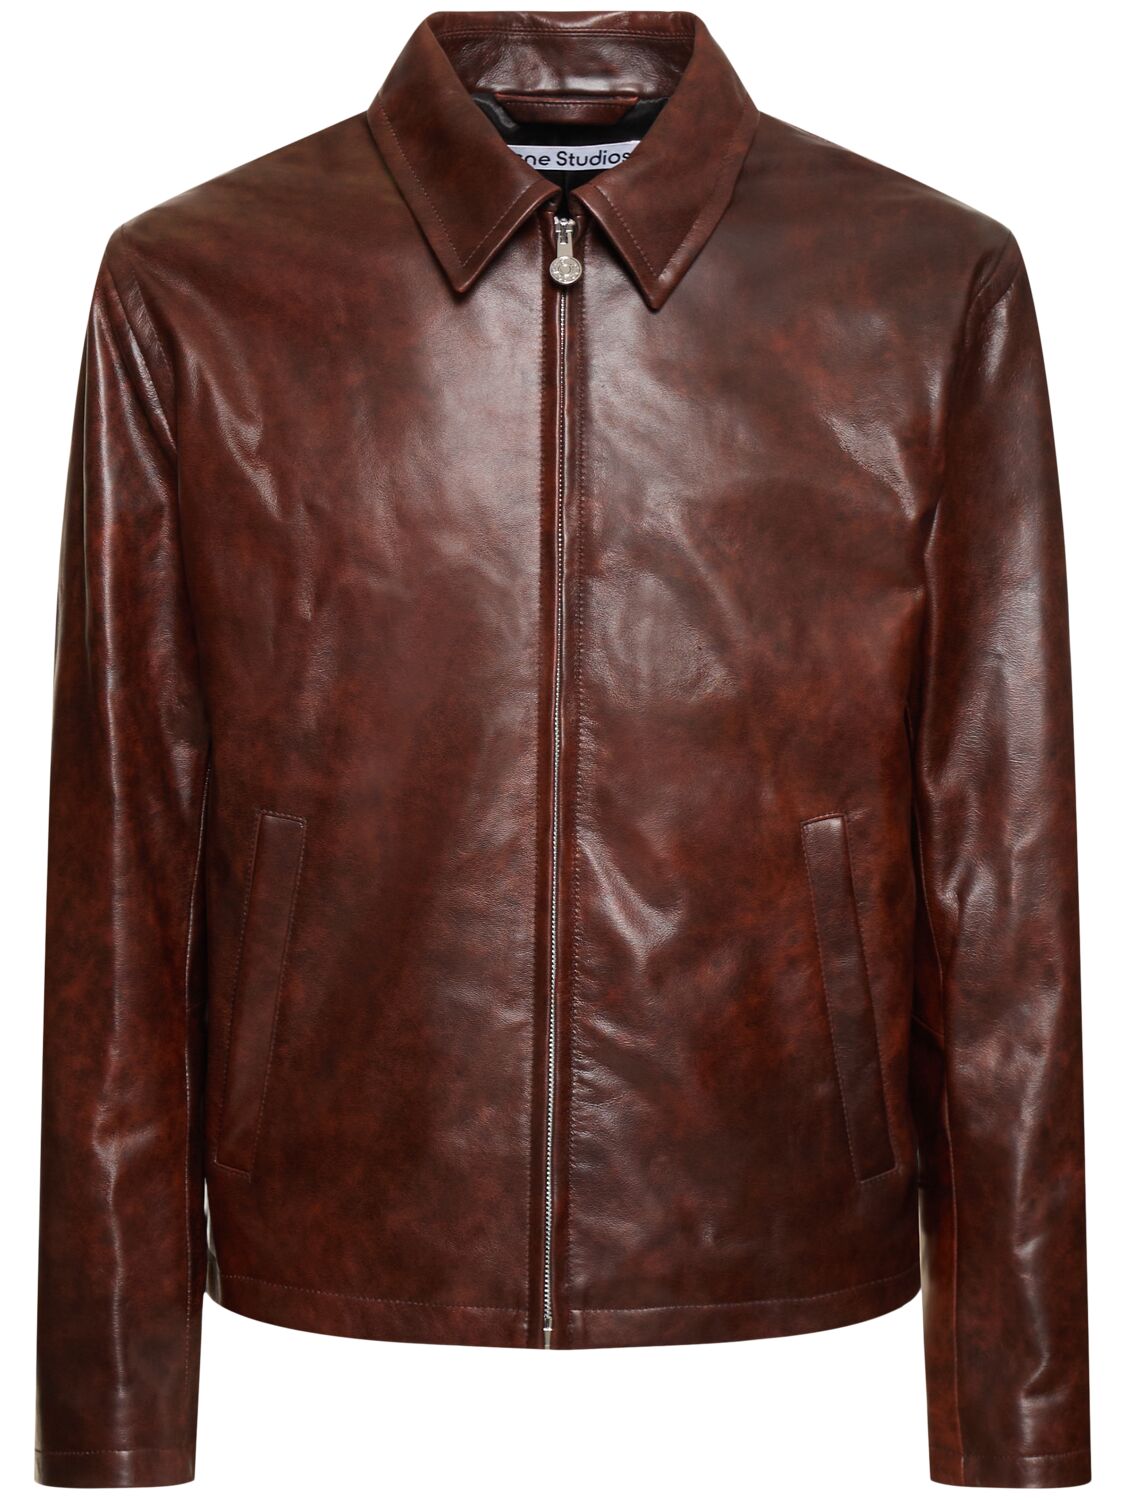 Laukwa Vintage Leather Jacket